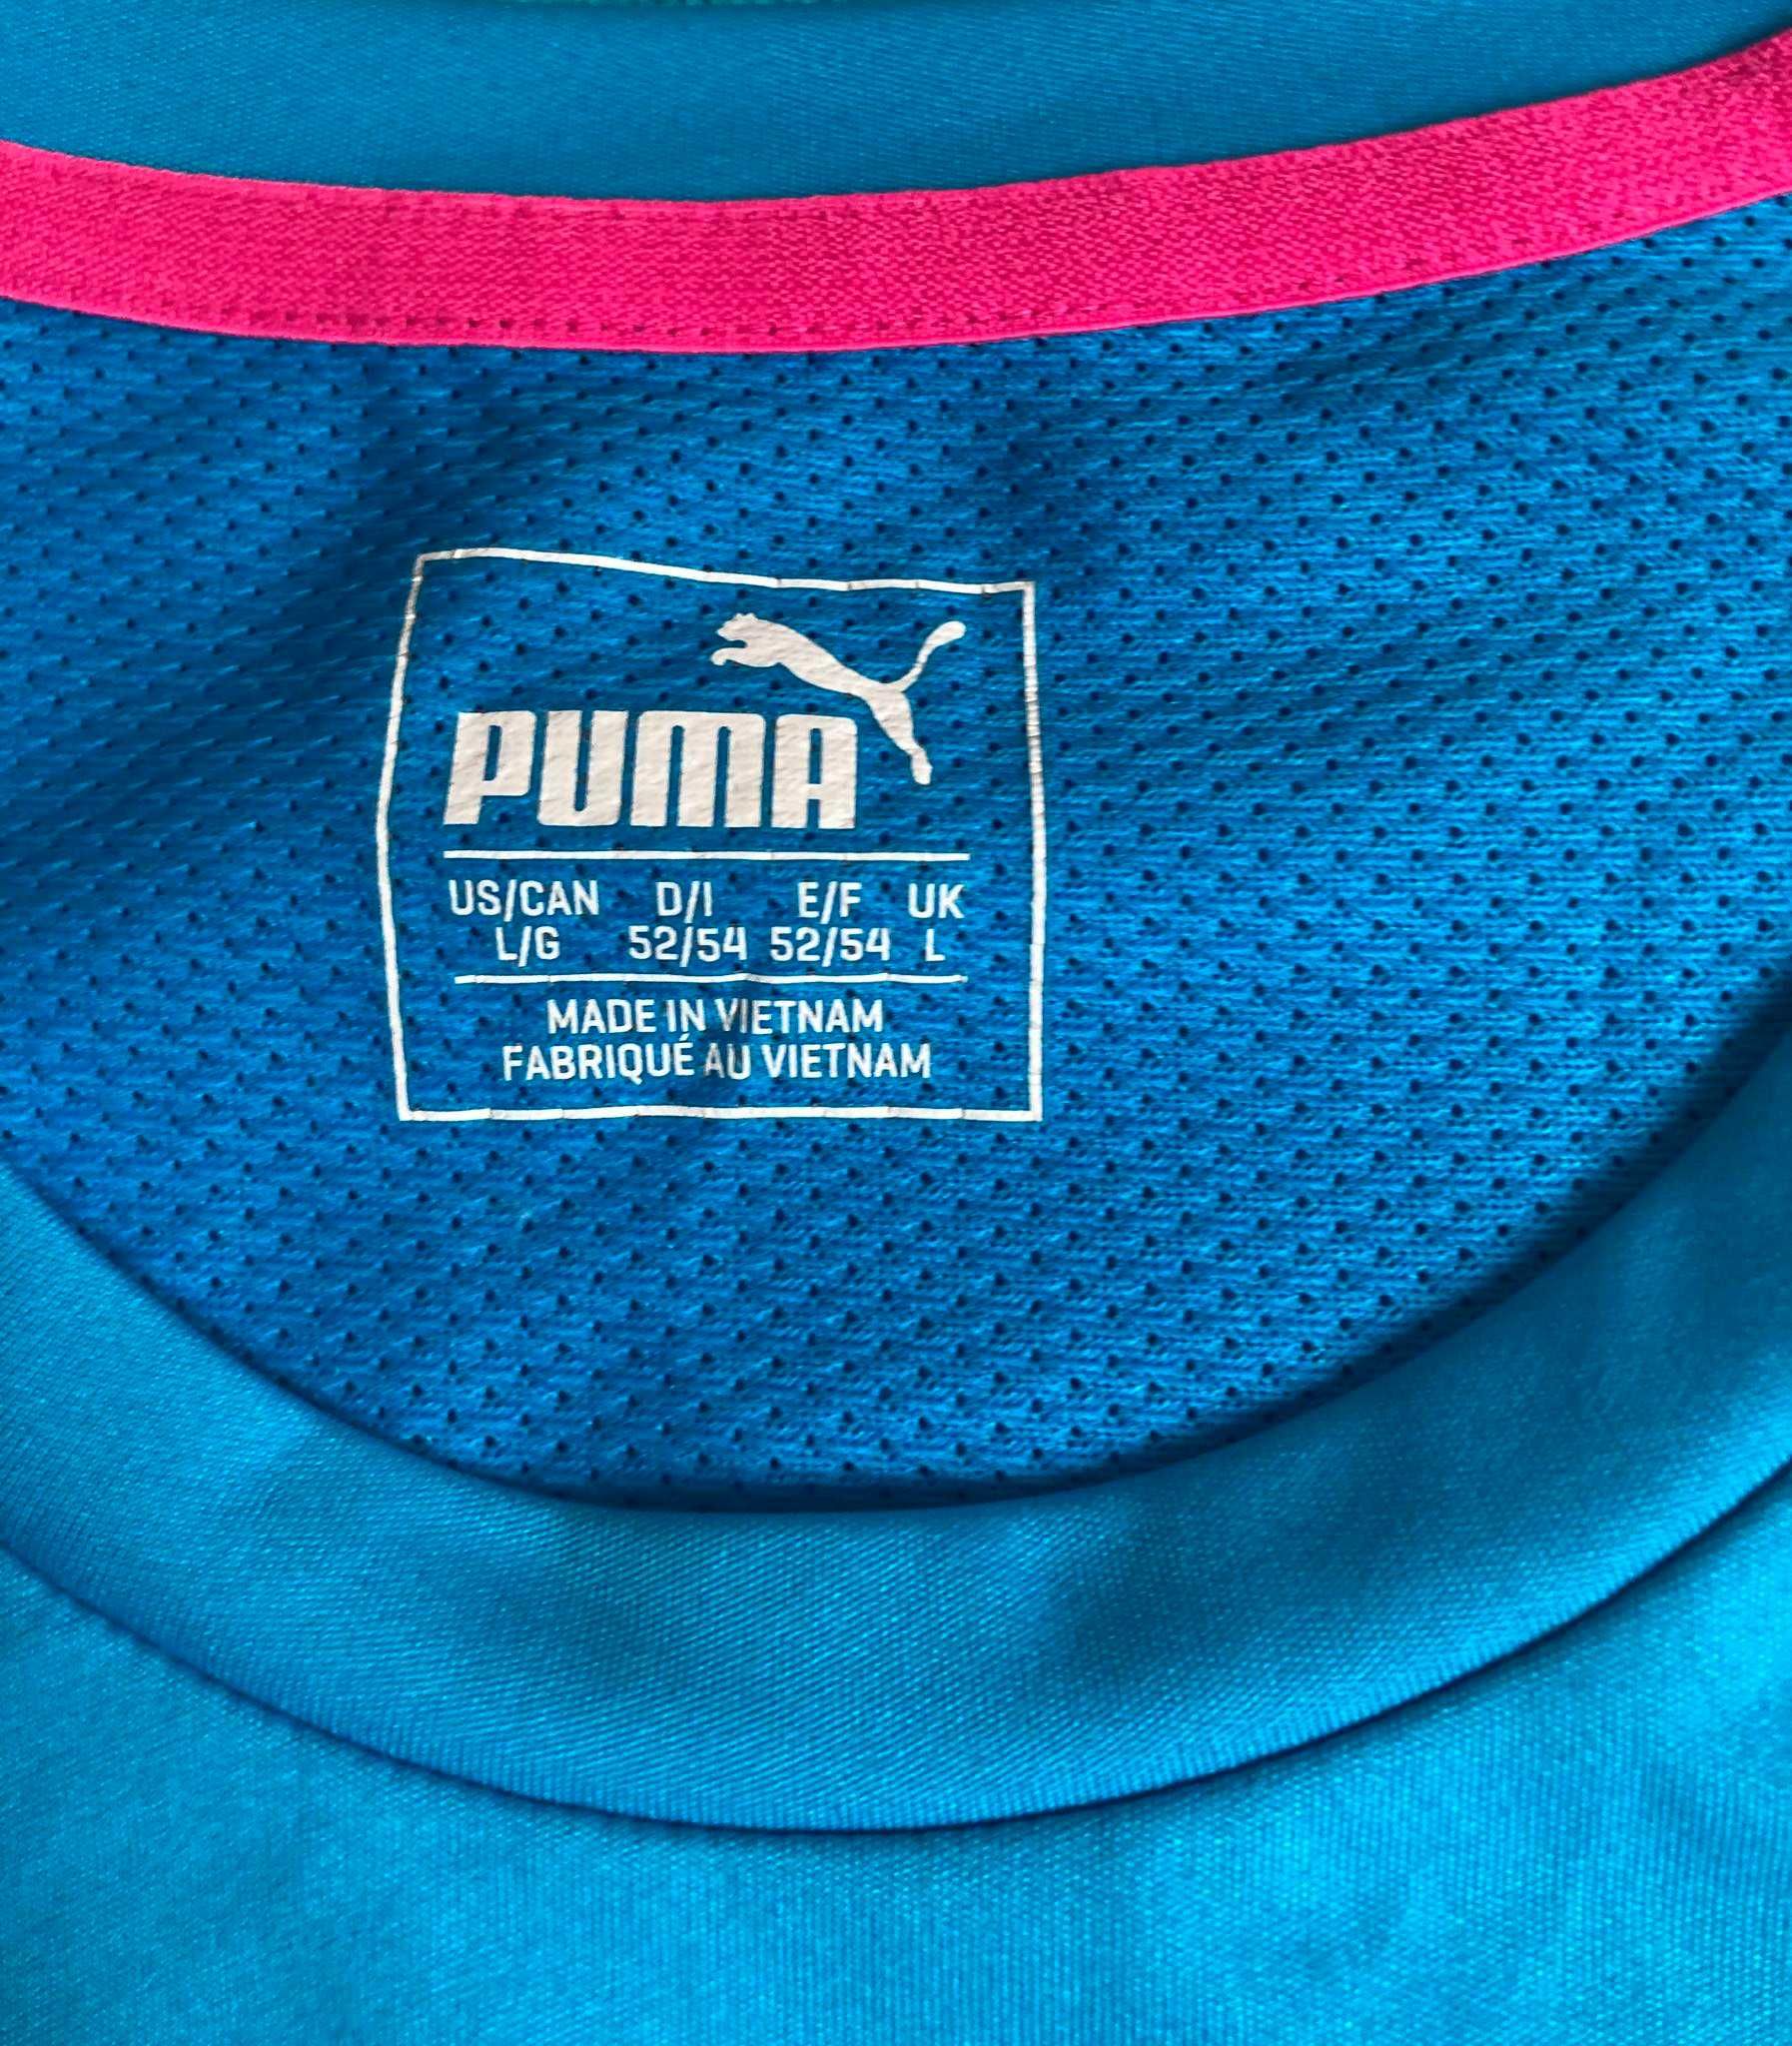 Koszulka Treningowa Włochy 2016/2017 Puma Roz. L